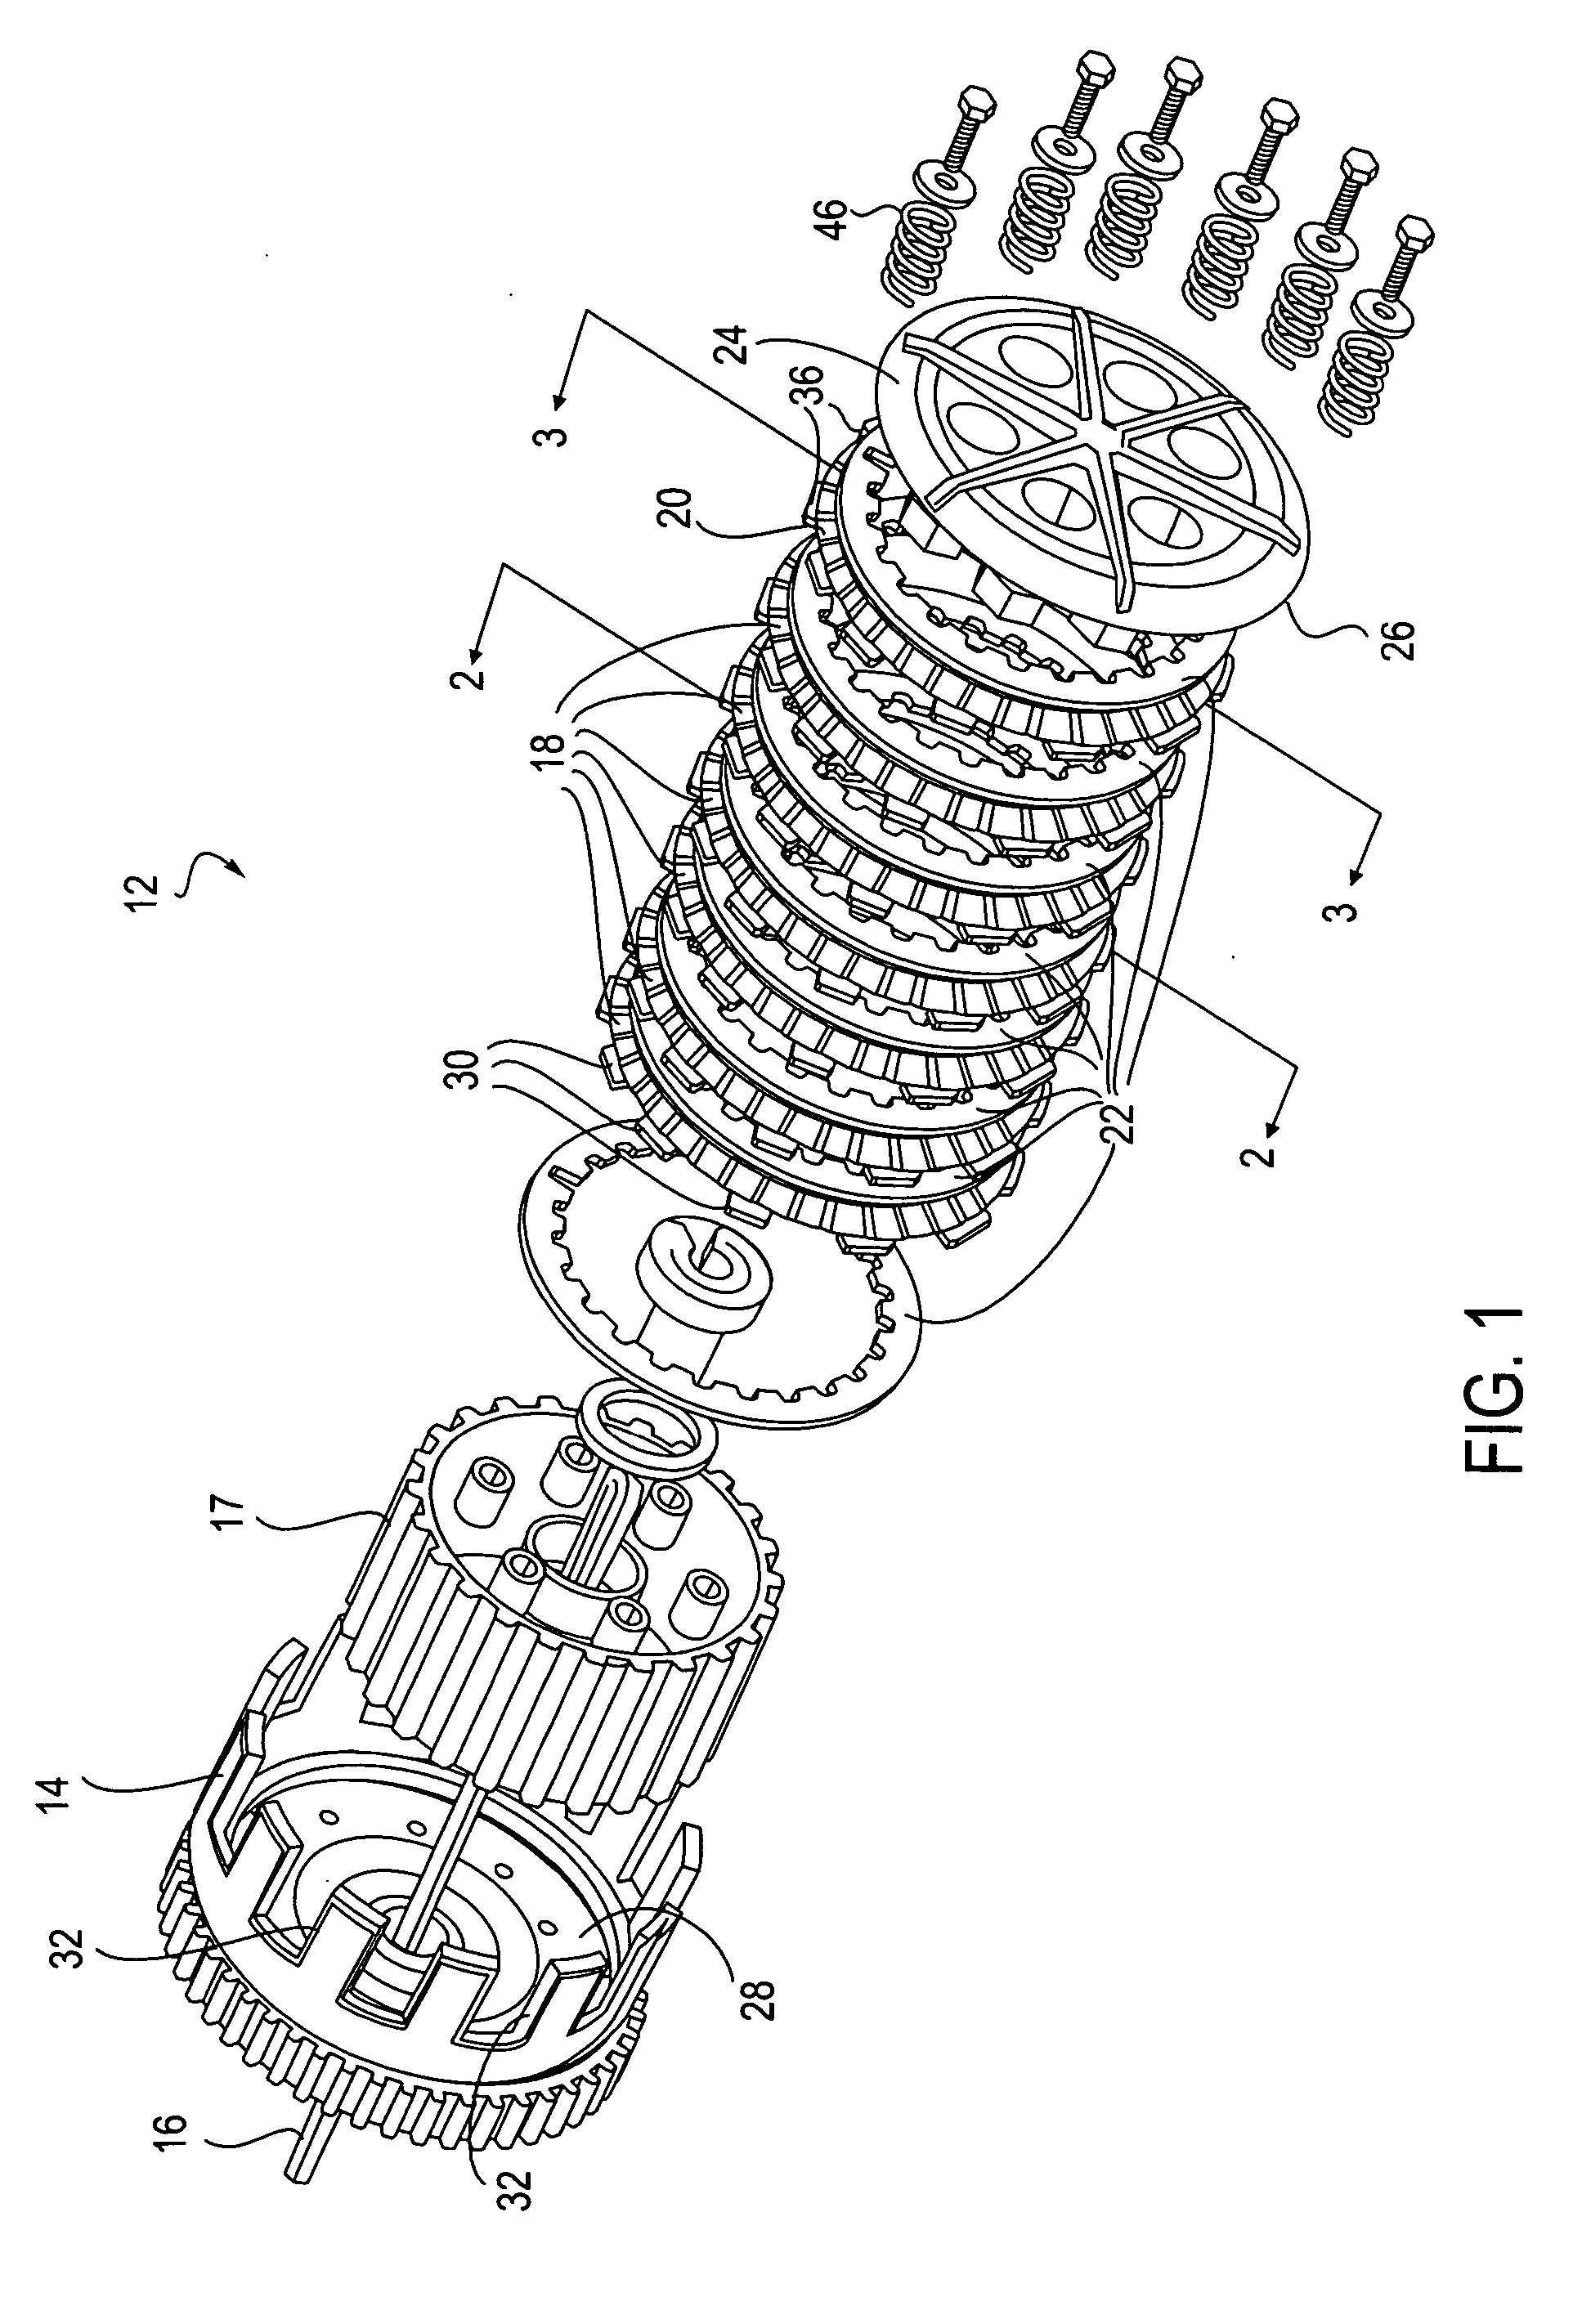 Multi-plate clutch